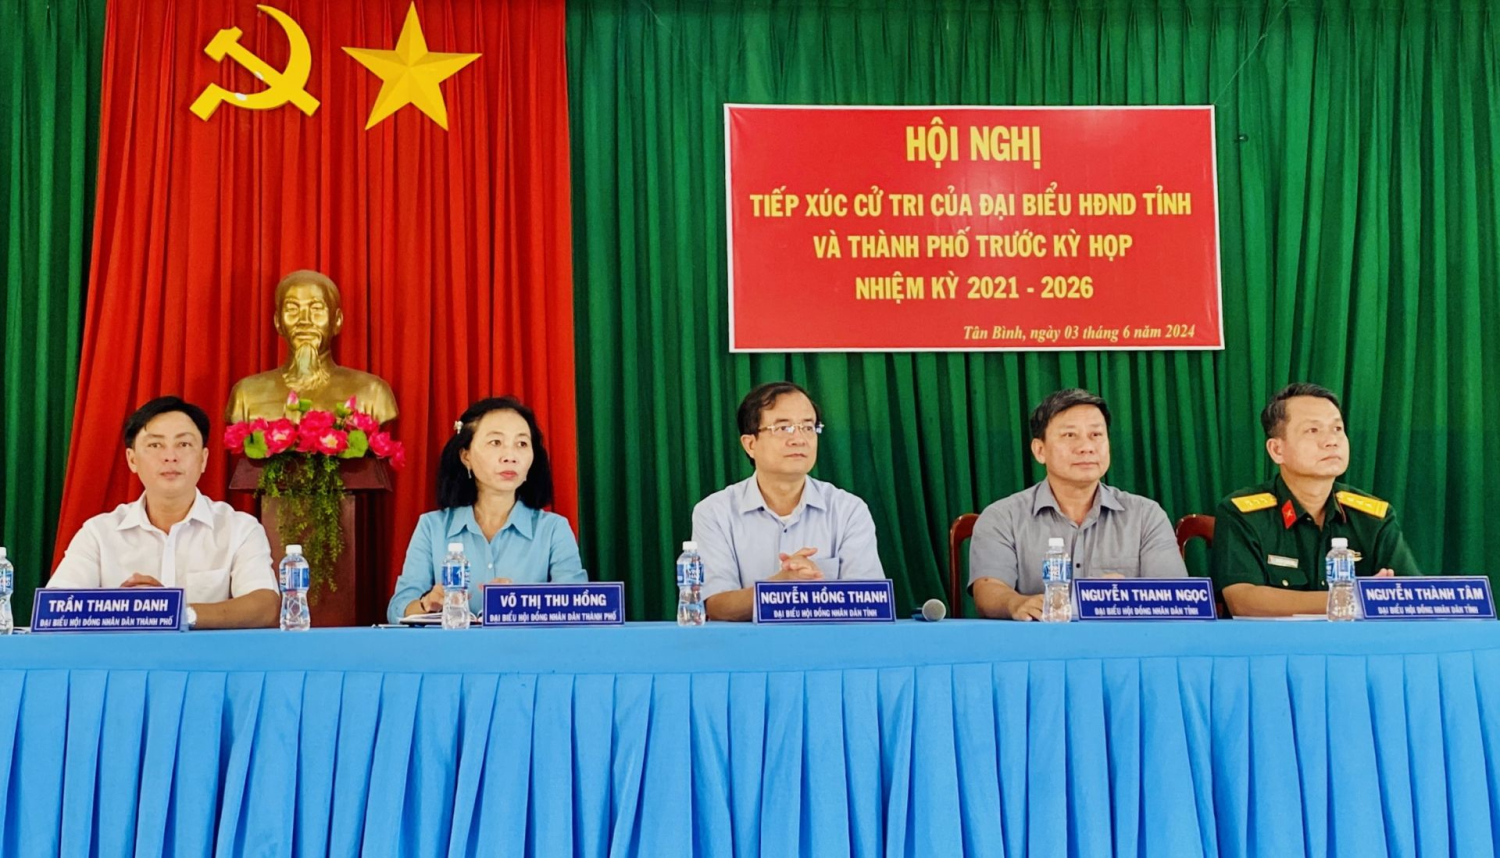 Ông Nguyễn Thanh Ngọc - Chủ tịch UBND tỉnh cùng các đại biểu HĐND tỉnh, thành phố tiếp xúc cử tri xã Tân Bình